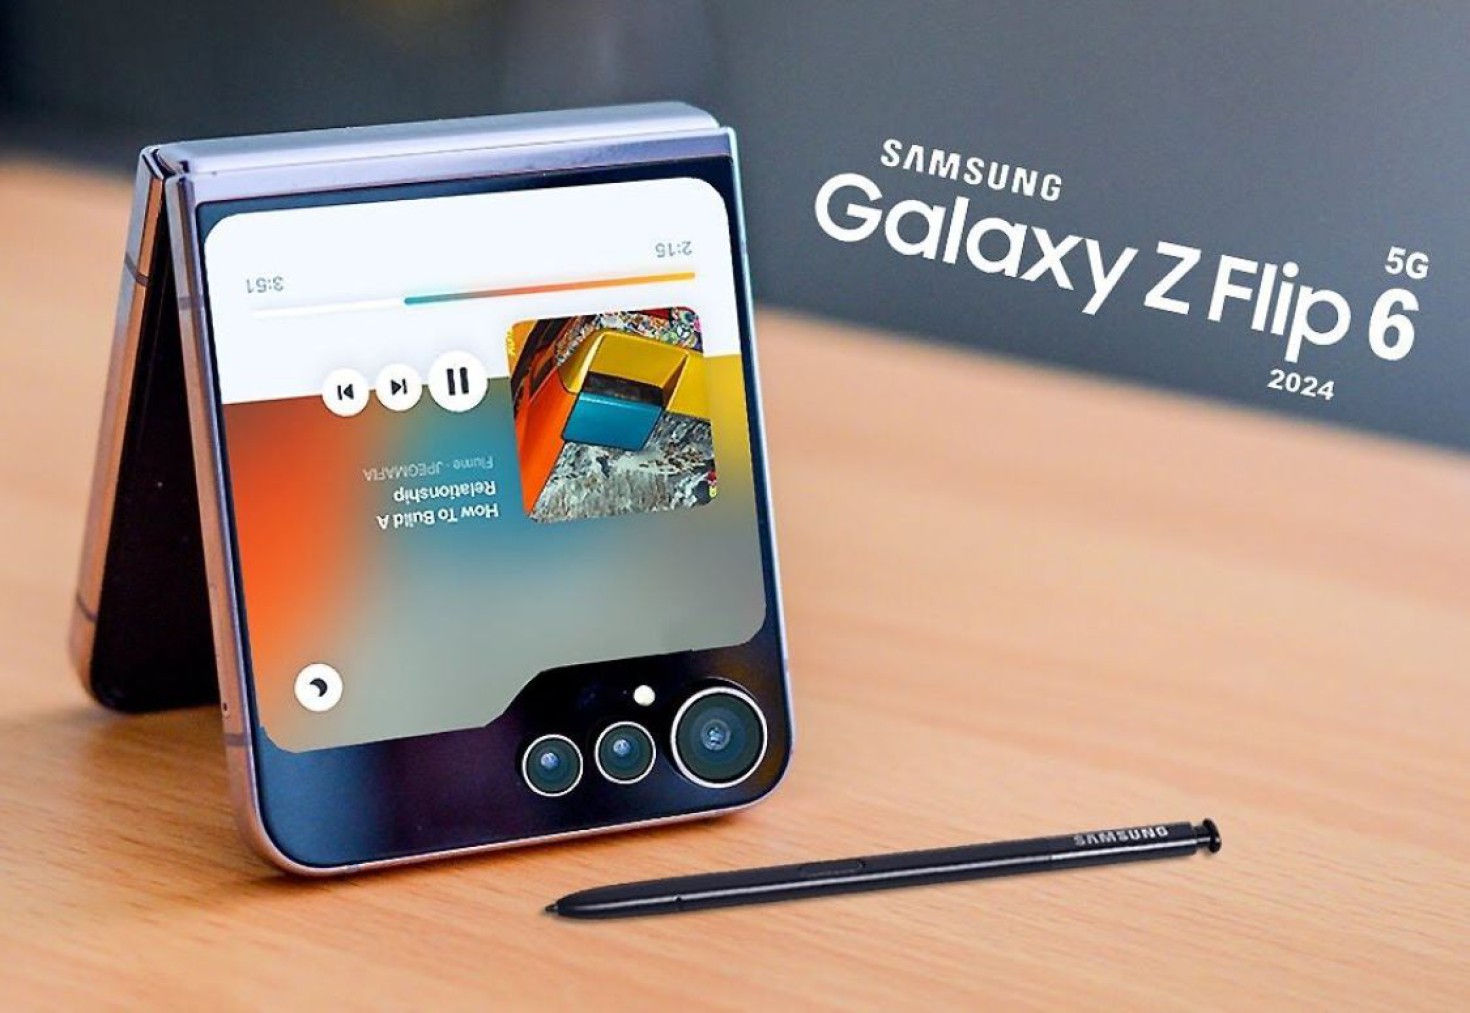 Đây là thông số cấu hình của Samsung Galaxy Z Flip 6!